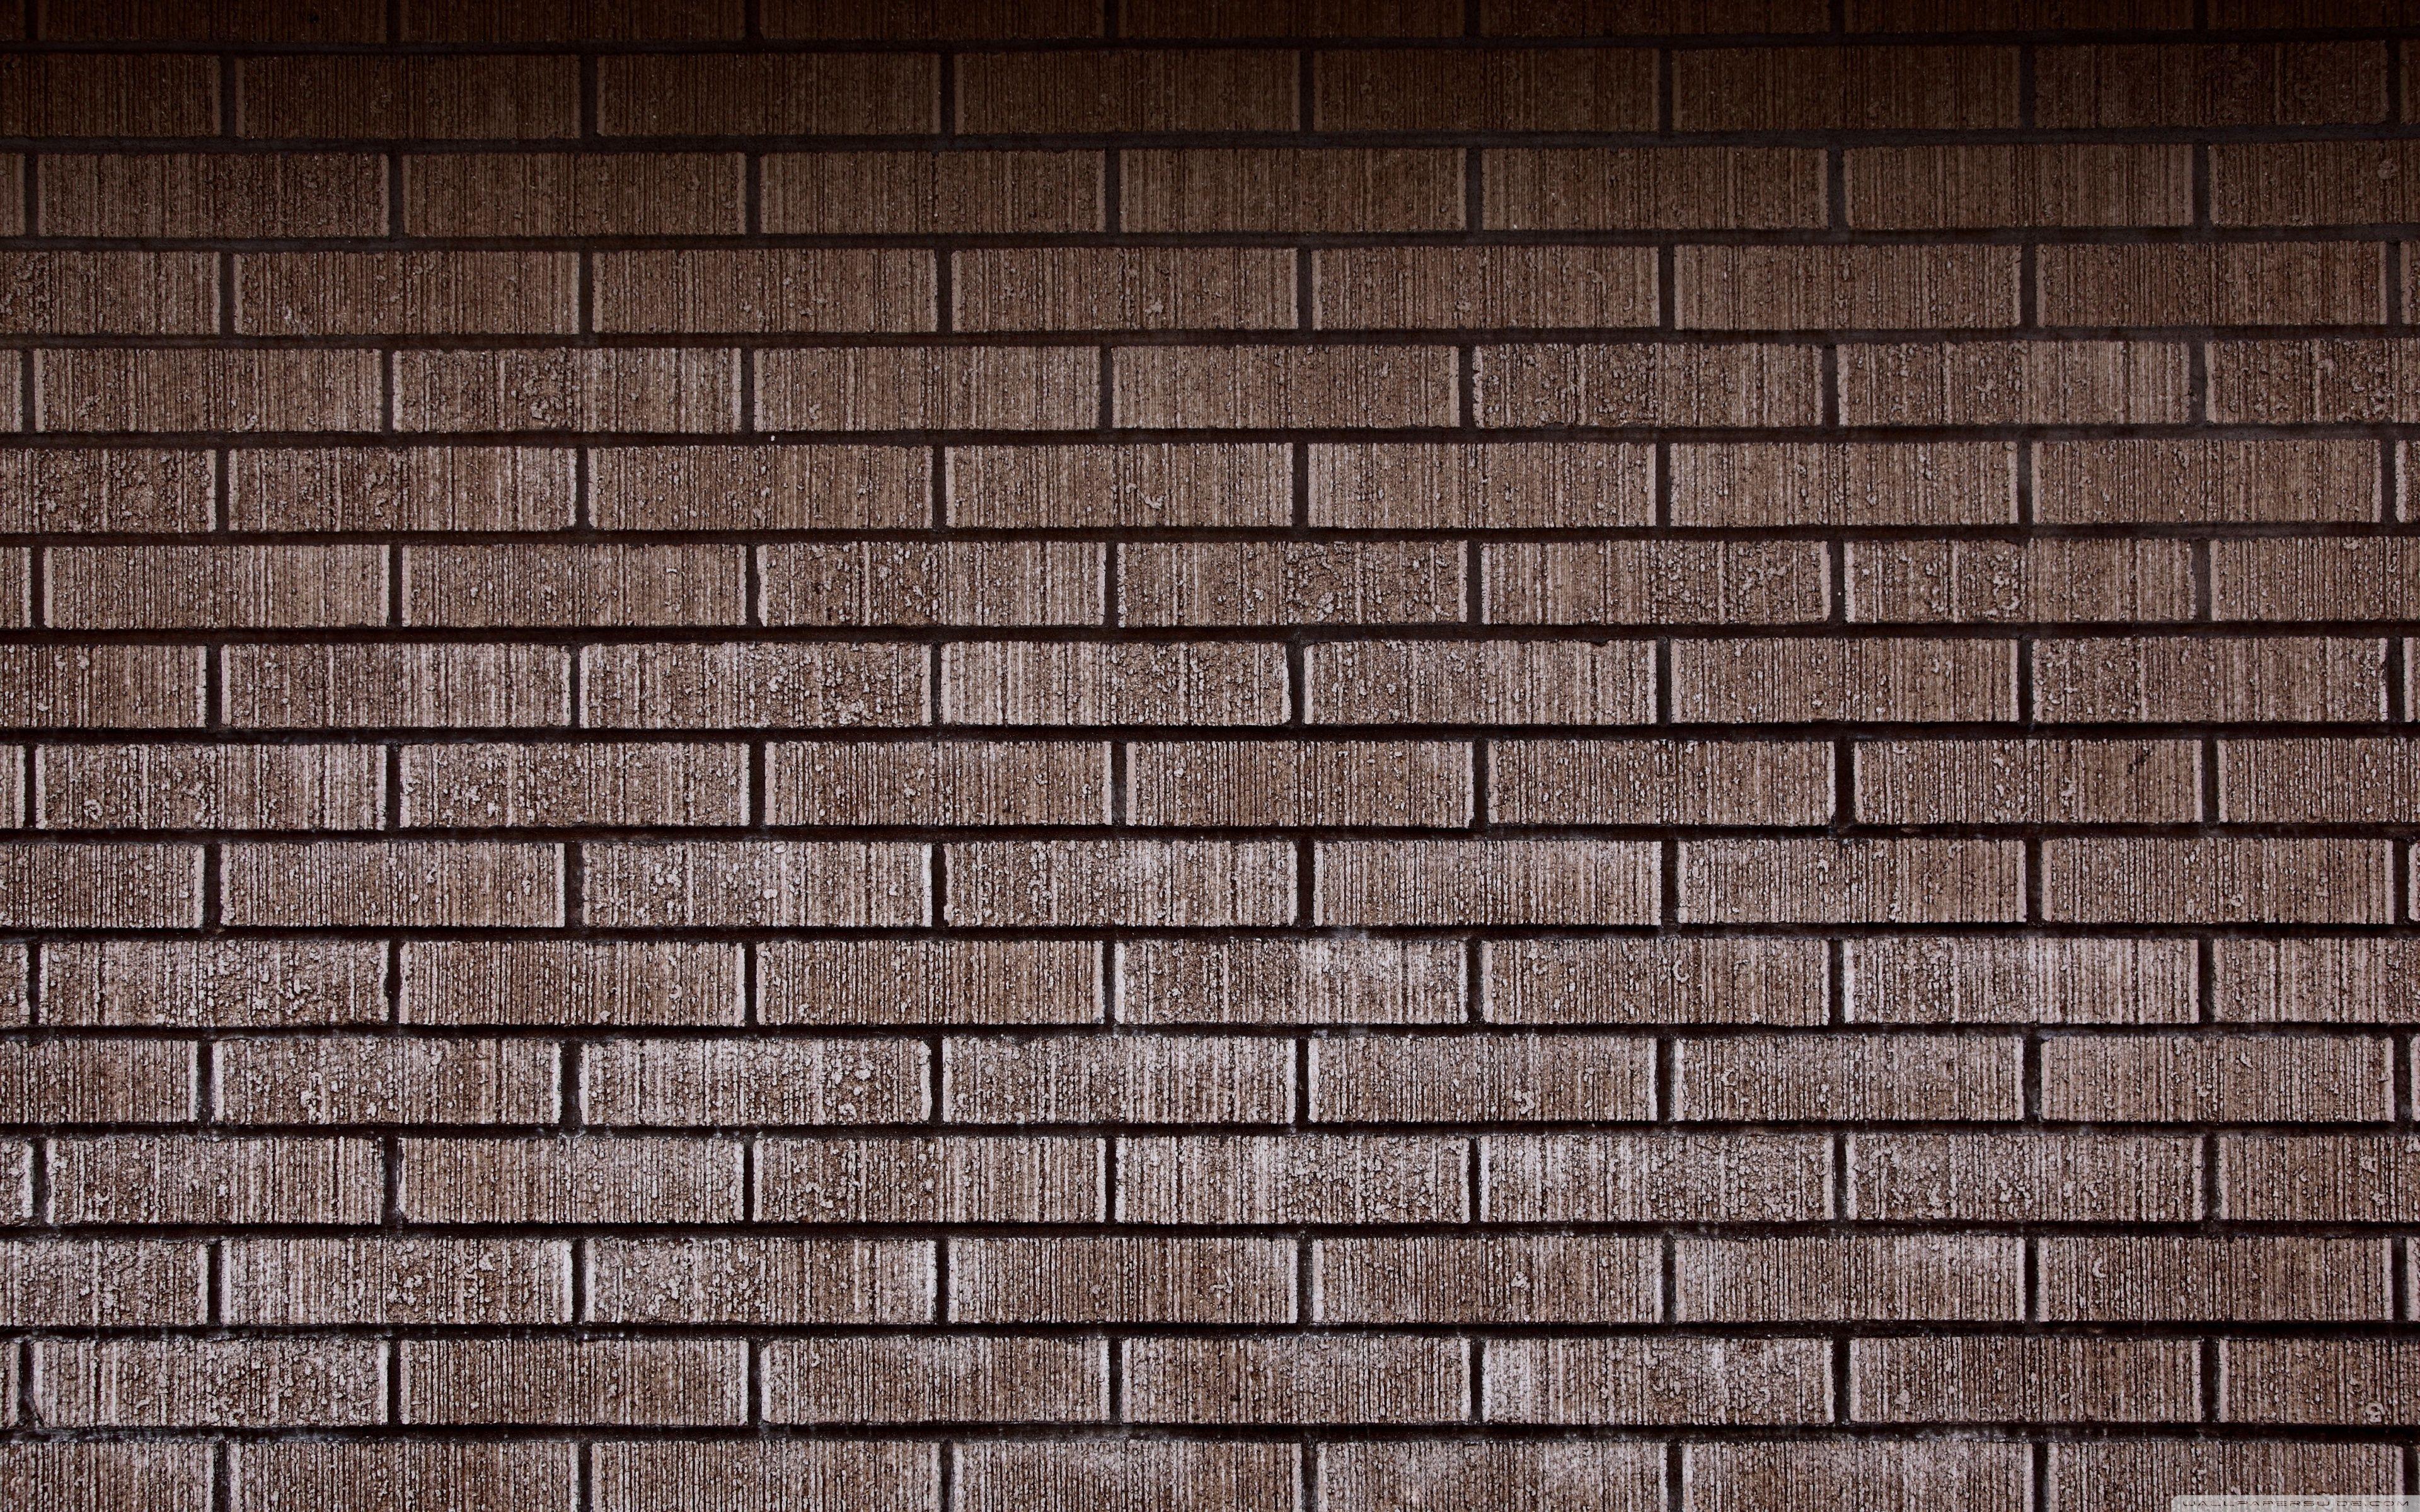 Brick Wall HD desktop wallpaper, High Definition, Fullscreen